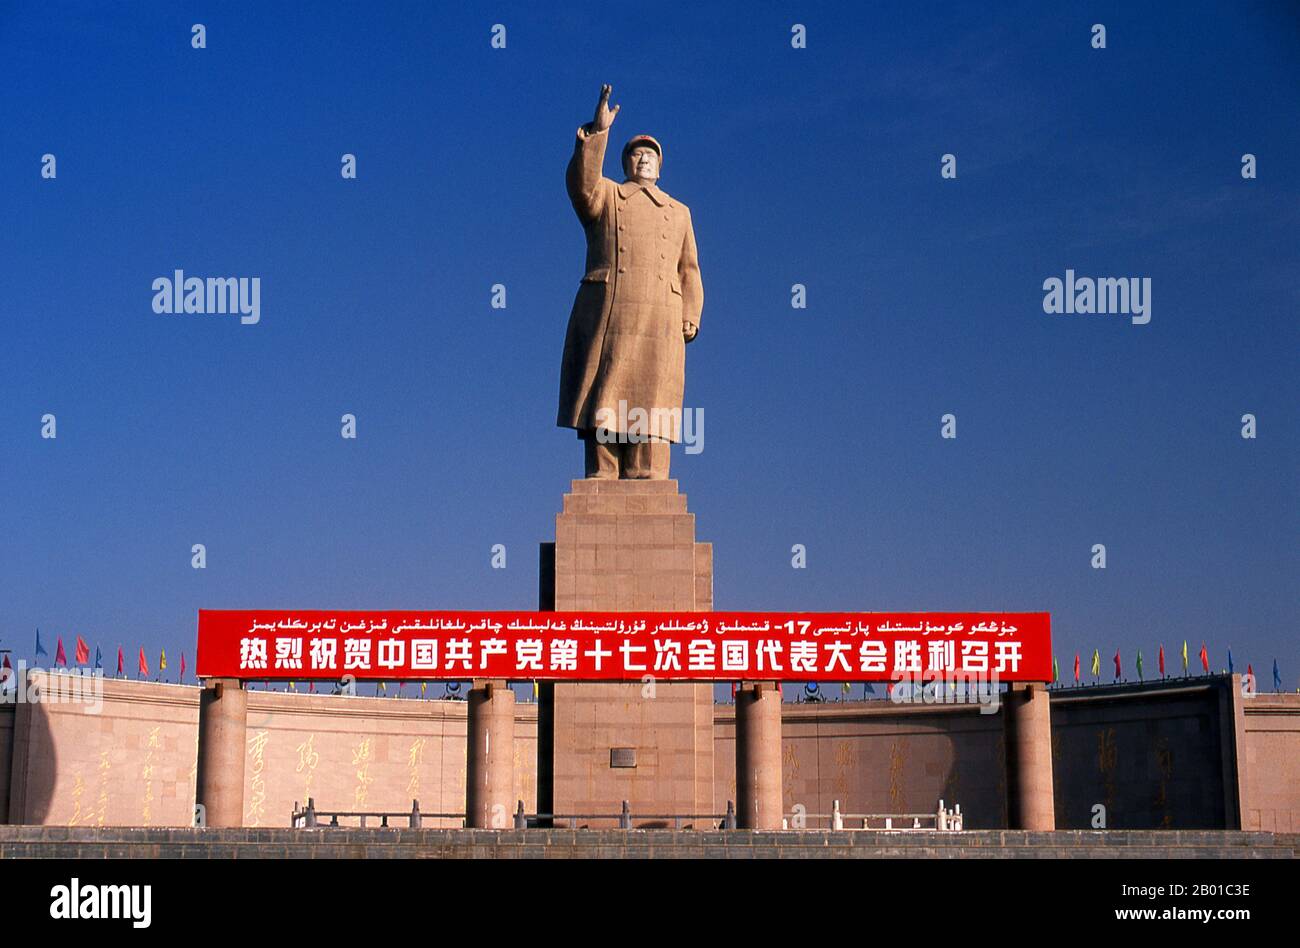 Cina: Statua di Mao Zedong (26 dicembre 1893 - 9 settembre 1976) Presidente della Repubblica popolare cinese, Kashgar, Provincia di Xinjiang. Mao Zedong, anche traslitterato come Mao TSE-tung, era un rivoluzionario comunista cinese, stratega guerrilla bellica, autore, teorico politico e leader della Rivoluzione cinese. Comunemente chiamato Presidente Mao, fu architetto della Repubblica popolare Cinese (PRC) dalla sua istituzione nel 1949, e detenne il controllo autoritario fino alla sua morte nel 1976. Foto Stock